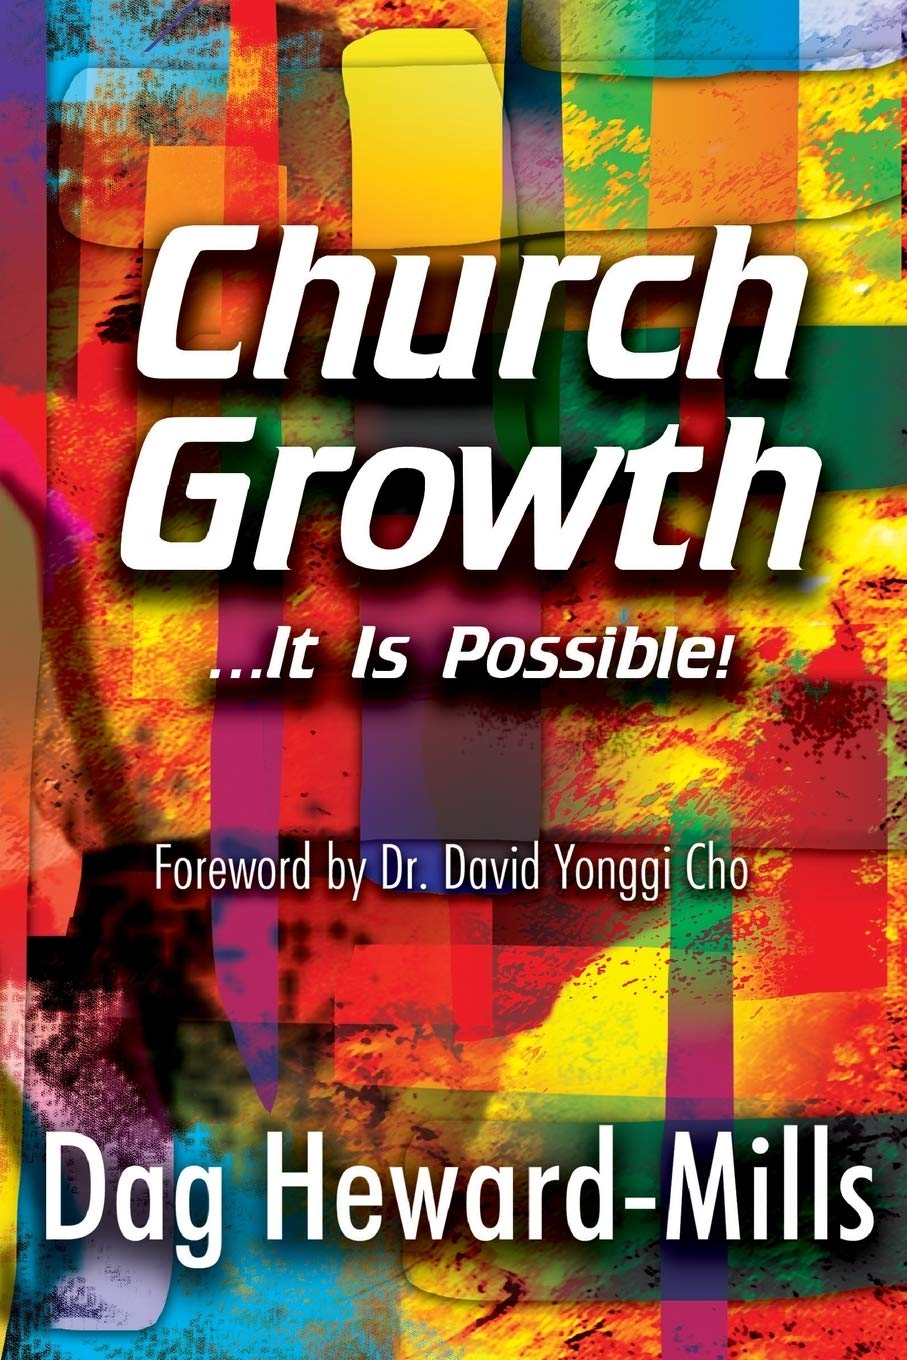 DOWNLOAD PDF: Church Growth by Dag Heward-Mills 22